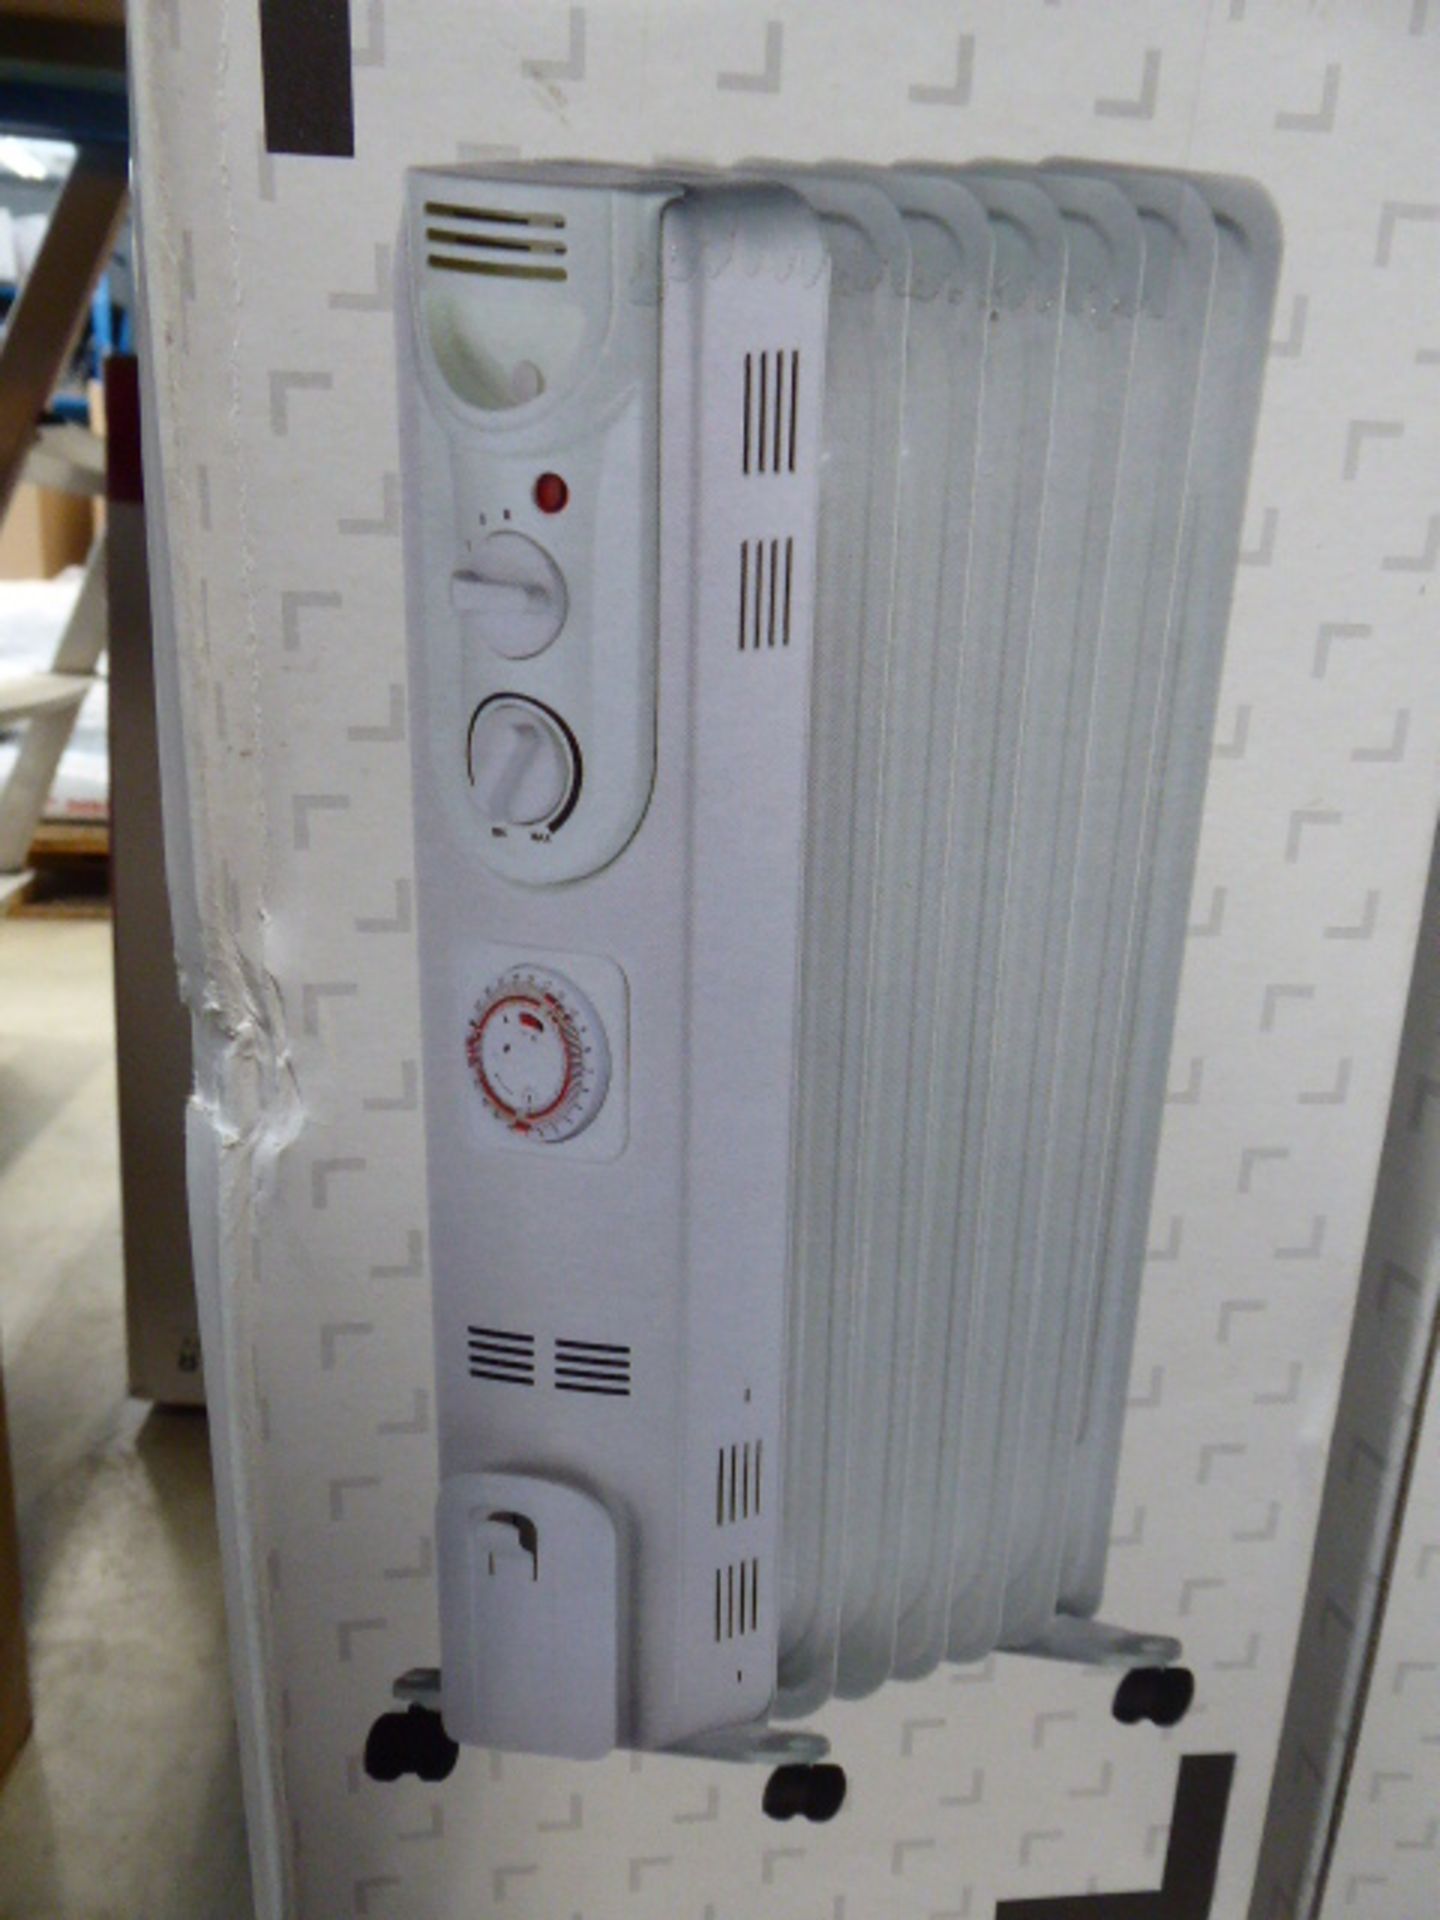 5 boxed 1500 watt white oil filled radiators - Image 3 of 3